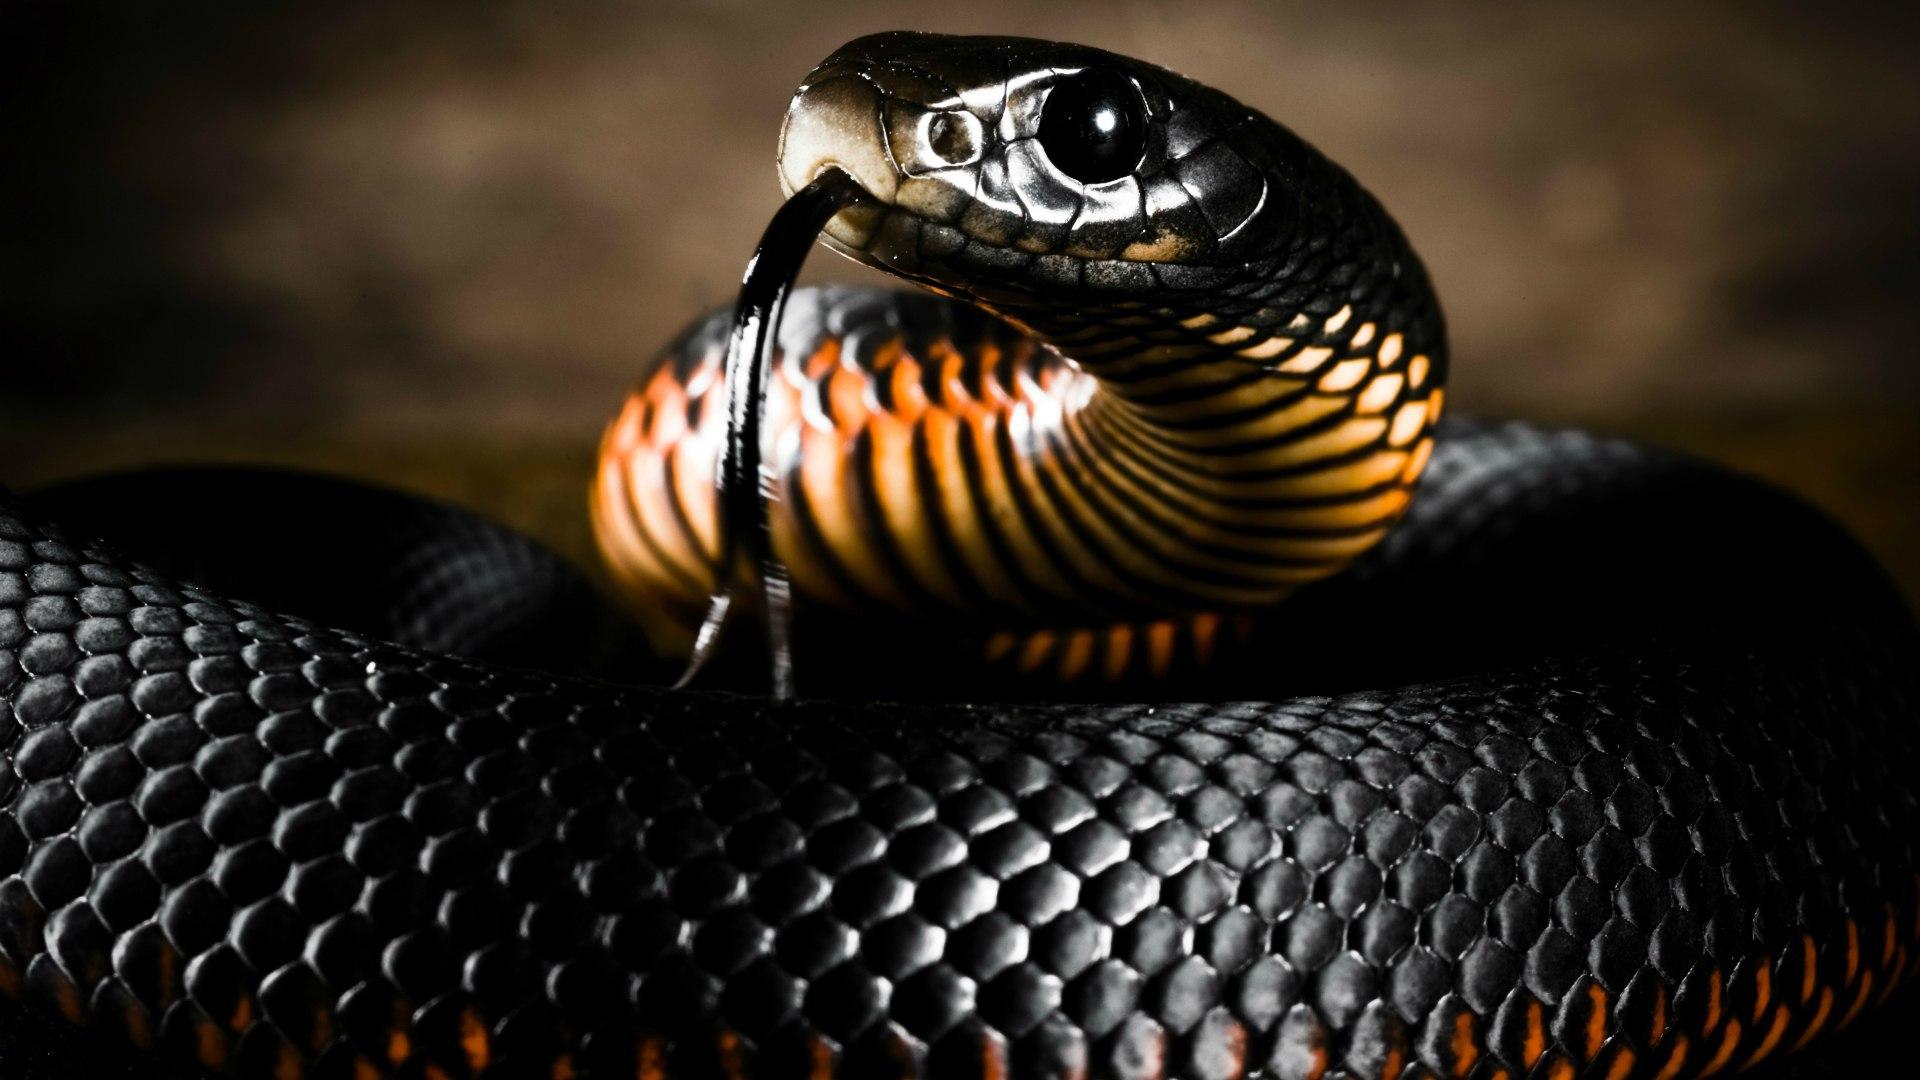 King cobra snake wallpaper HD